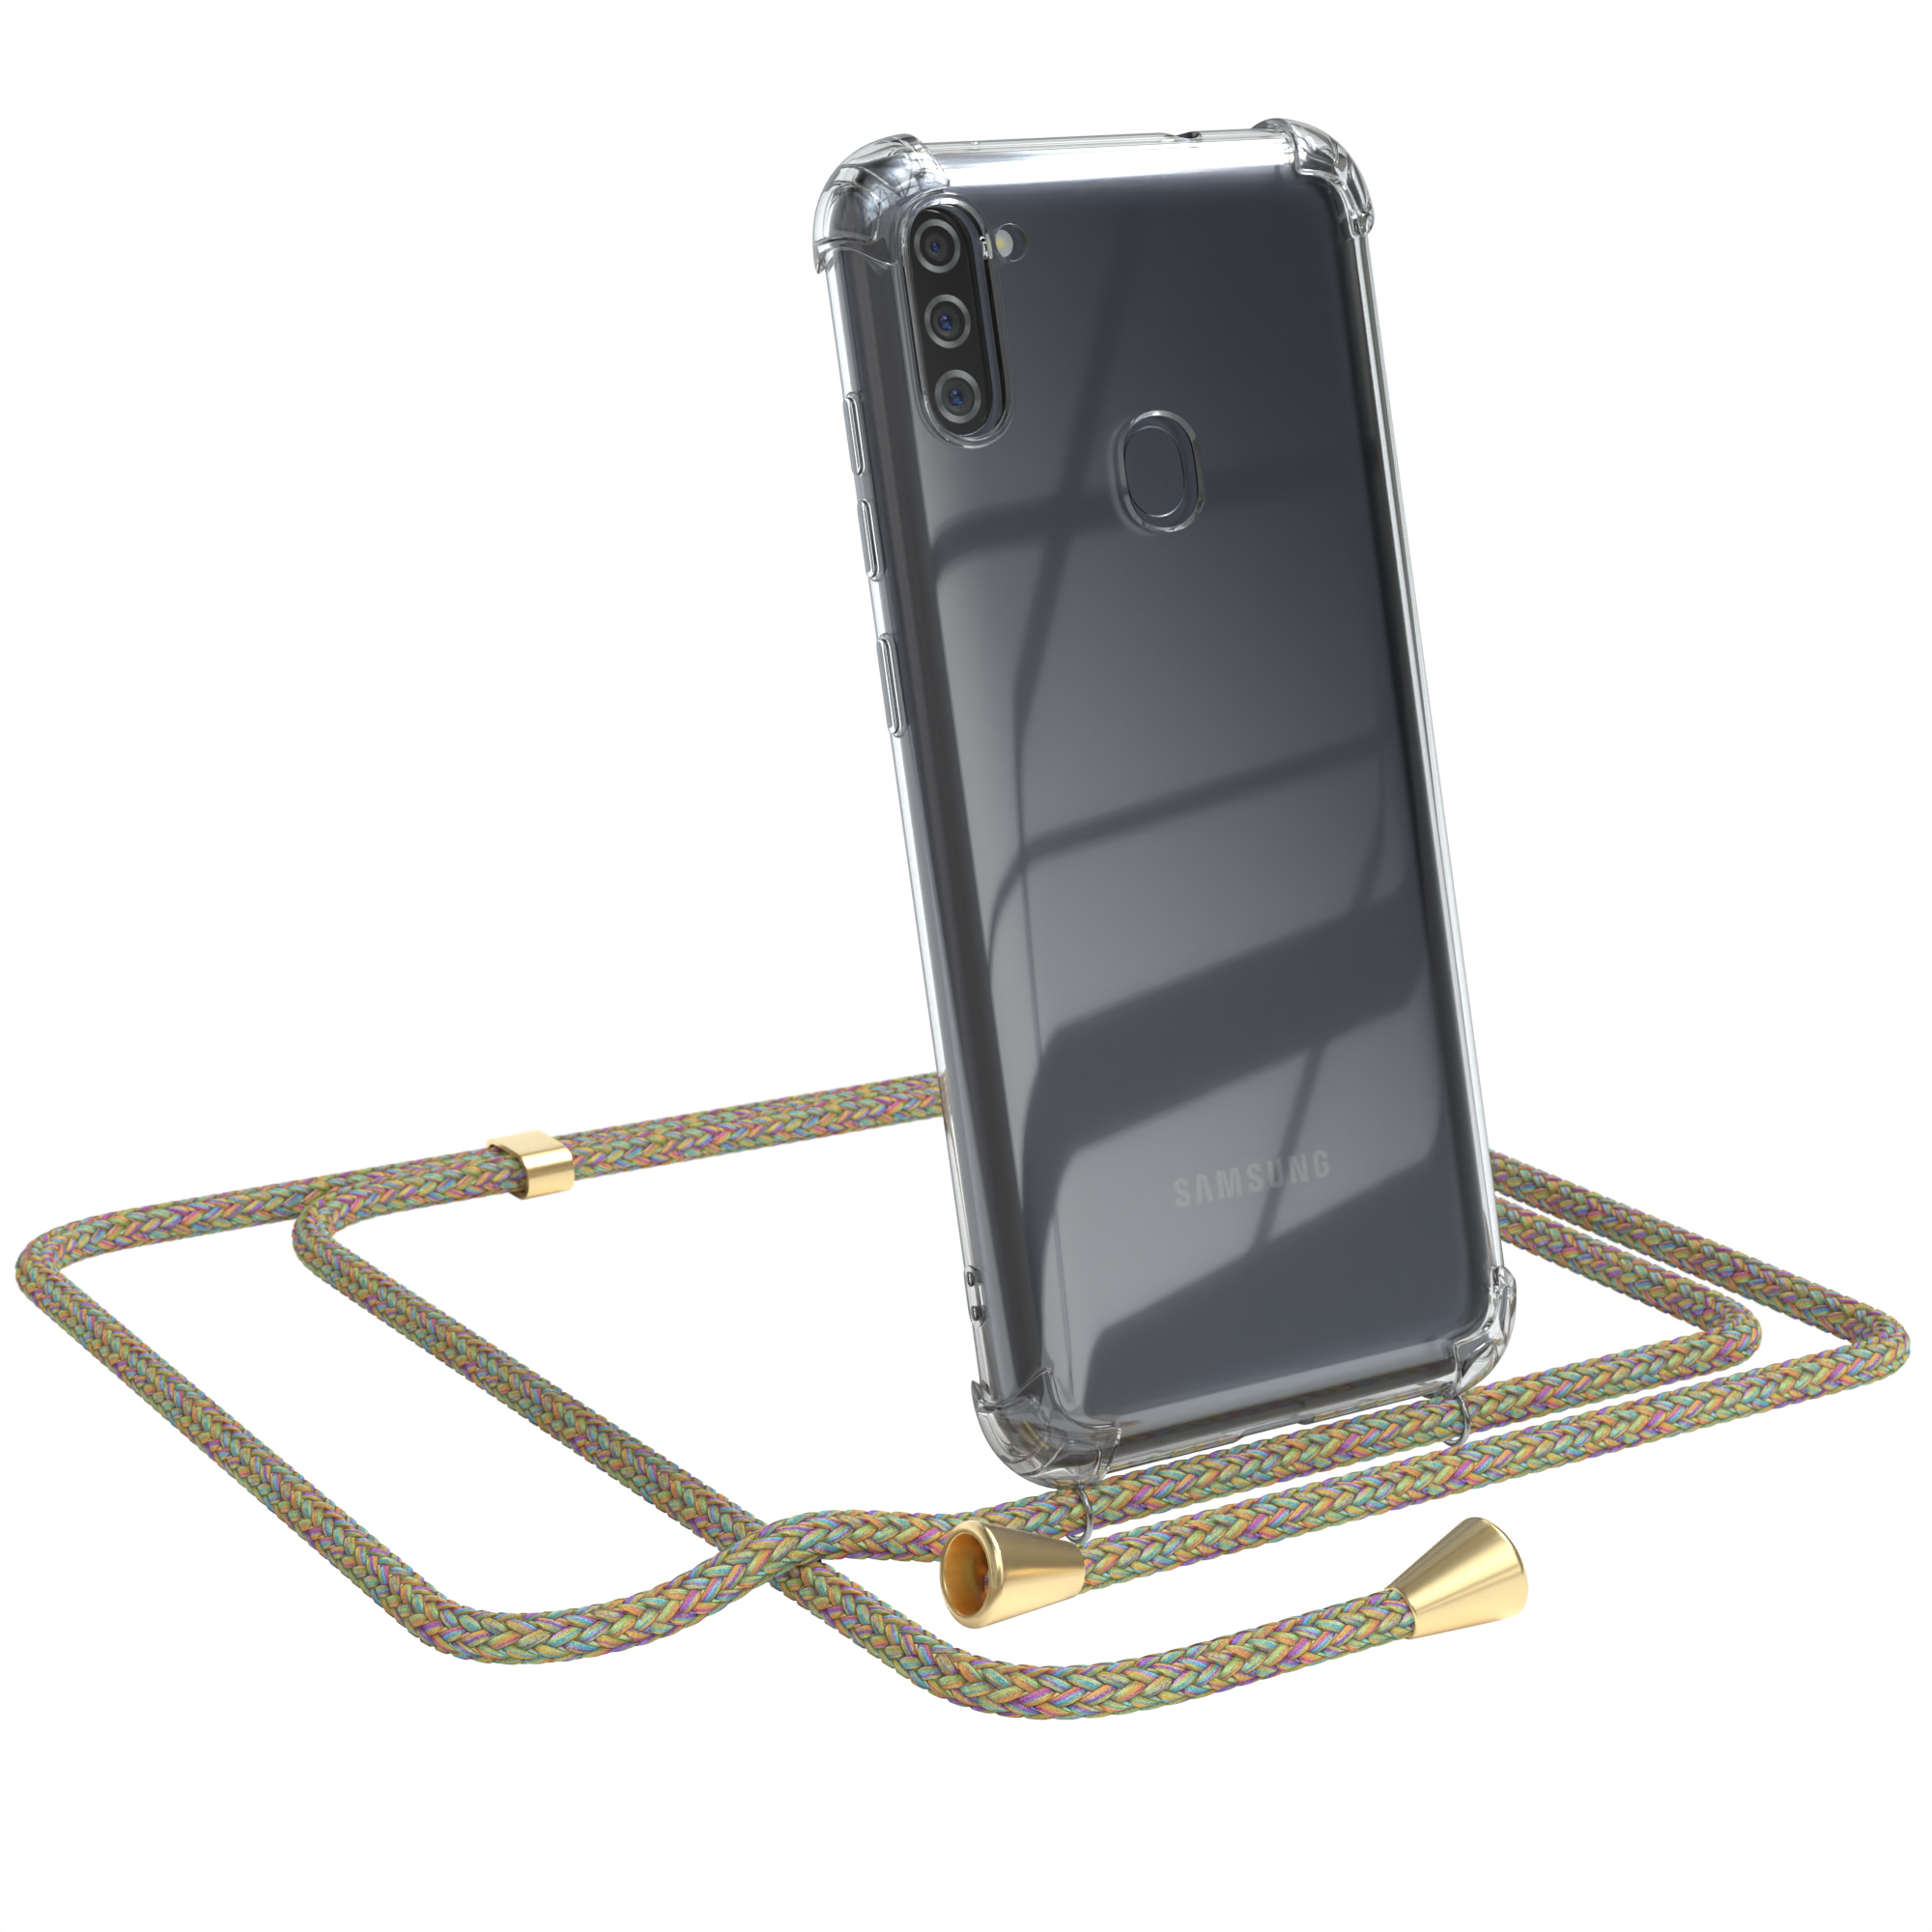 Umhängetasche, Clear Samsung, CASE mit Umhängeband, Clips M11, EAZY / Gold Bunt Galaxy Cover